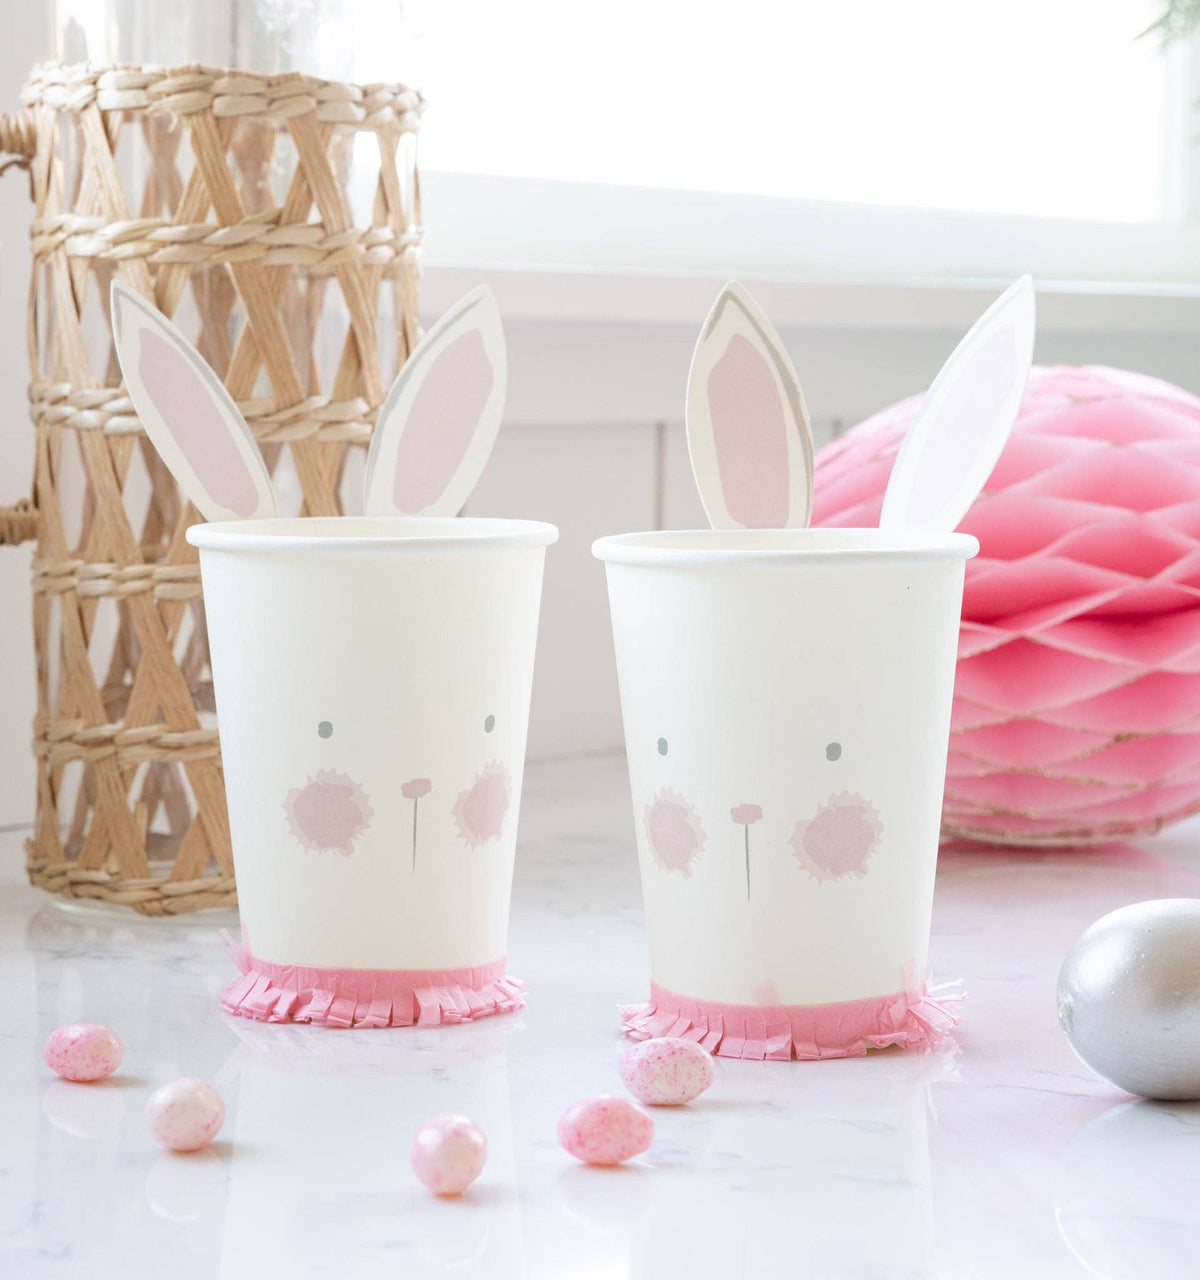 Bunny Cup